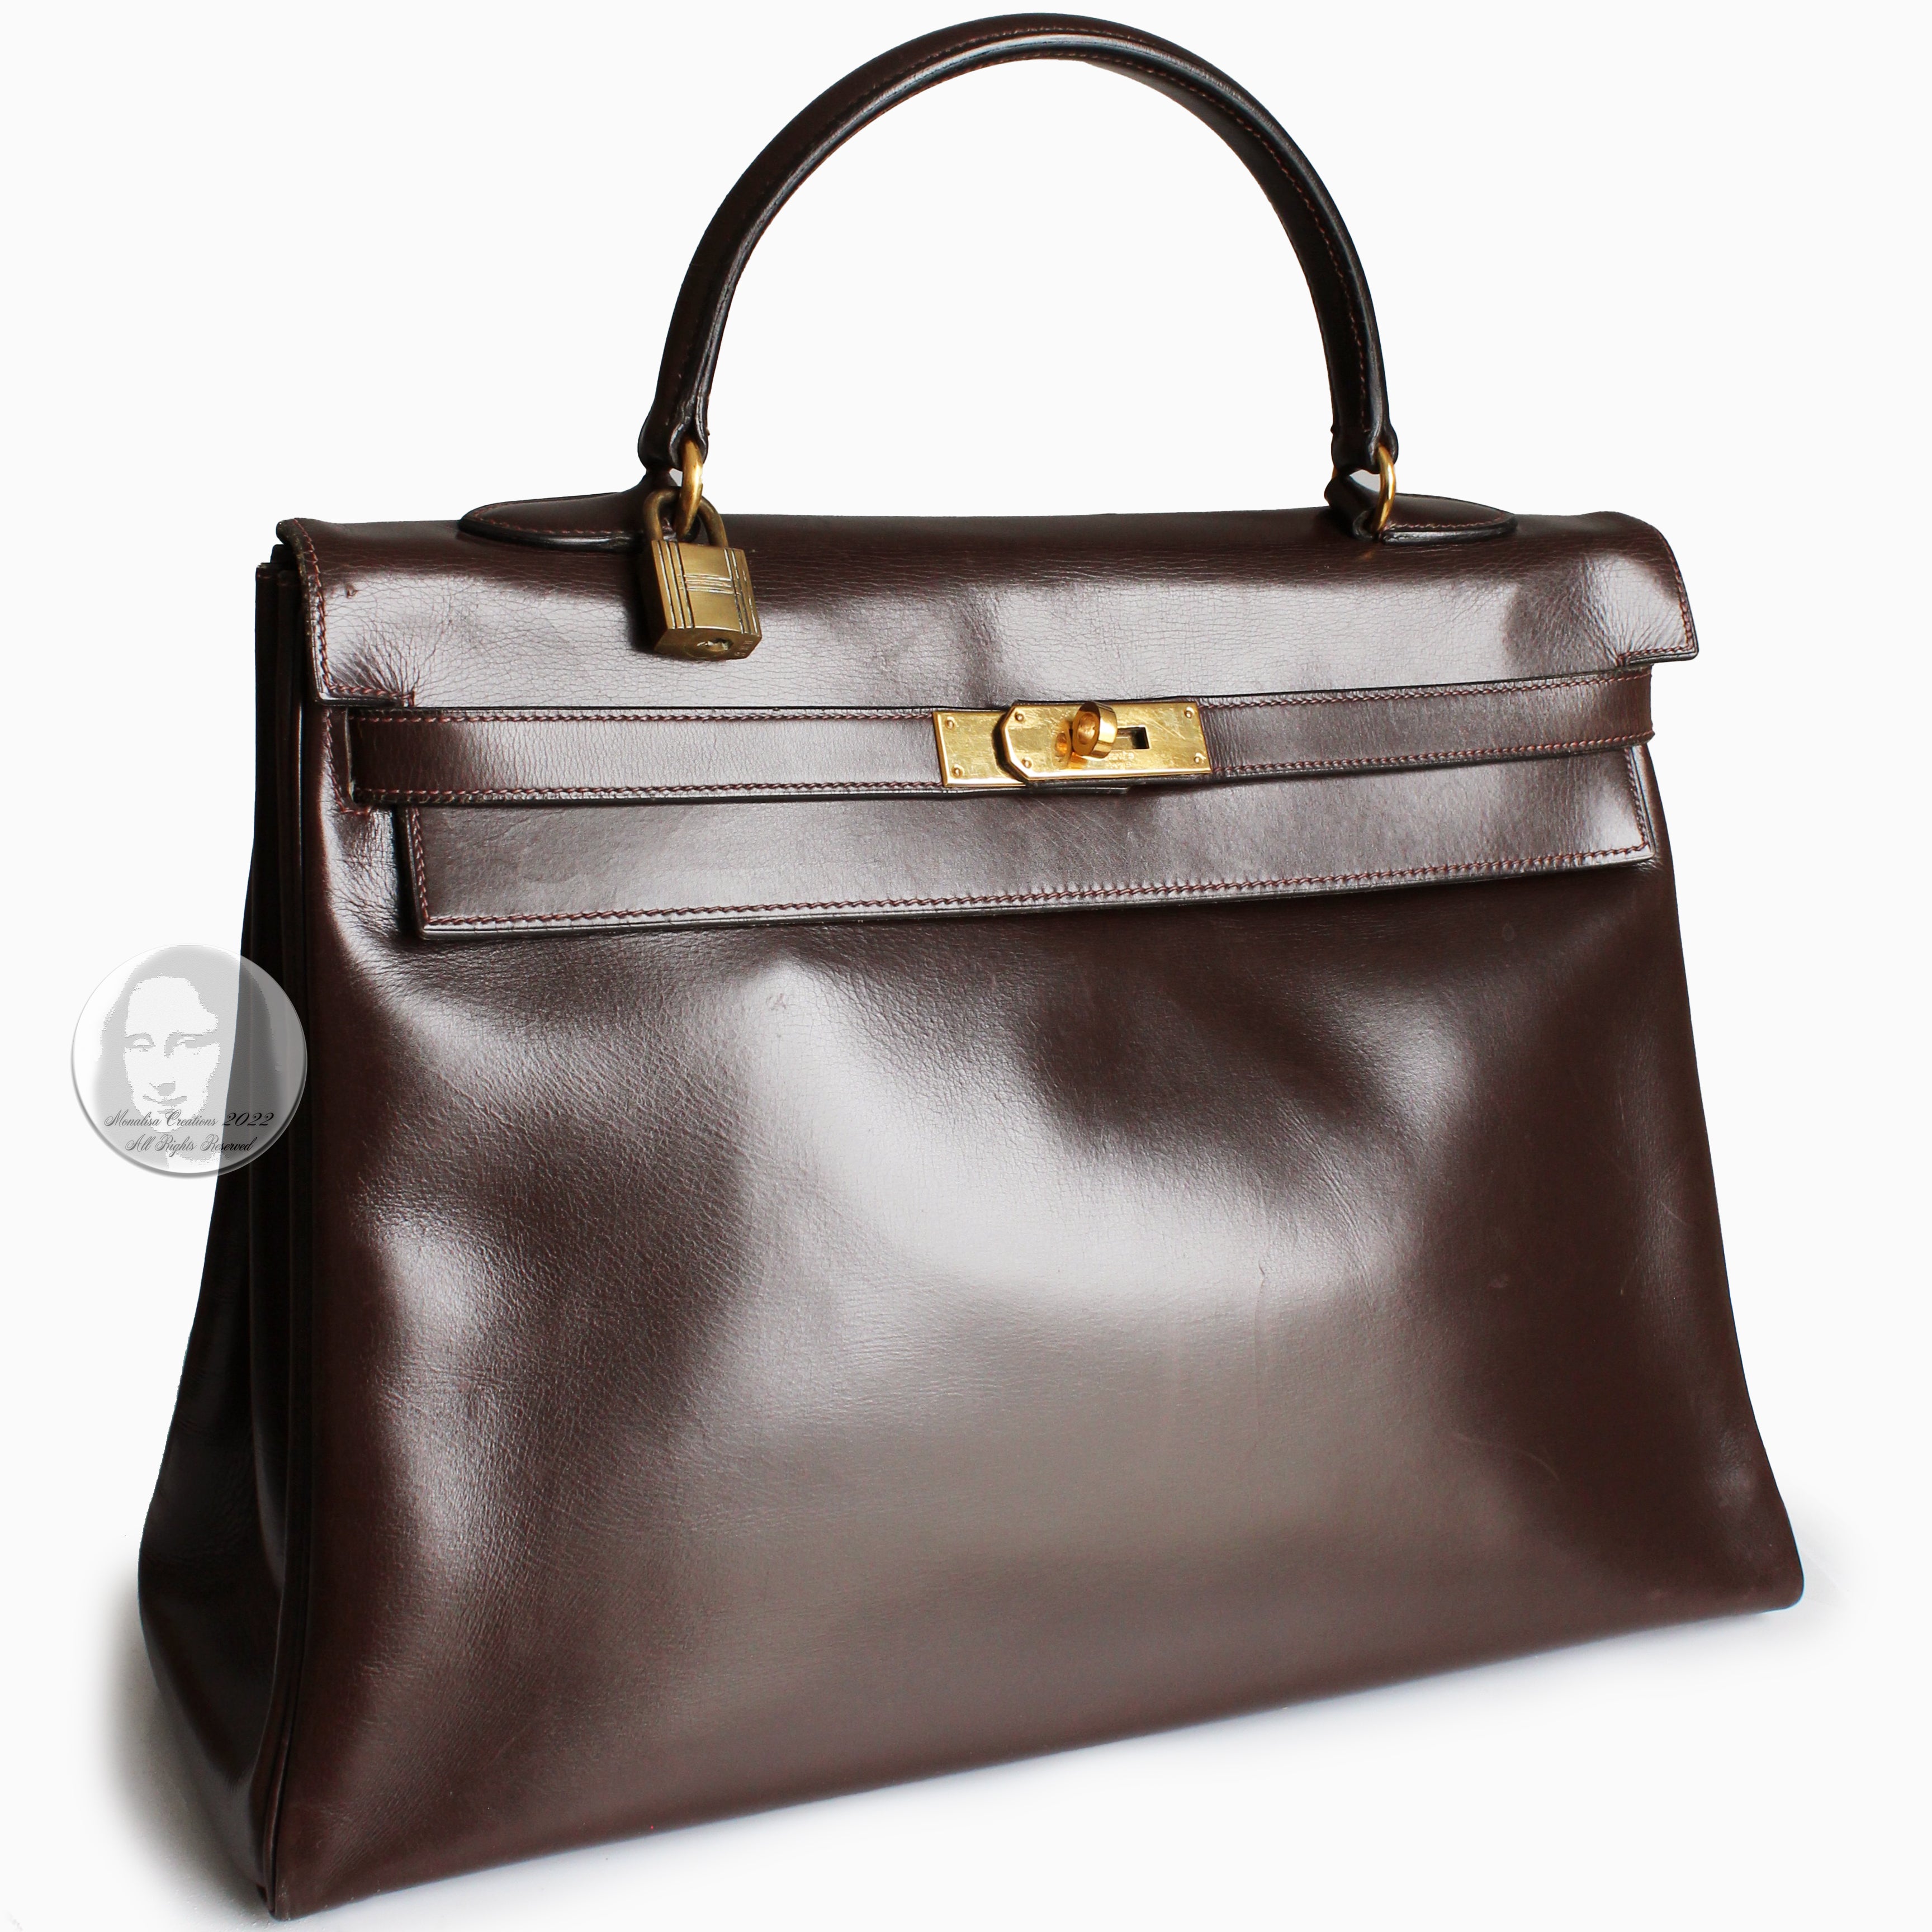 Hermès: A Vintage Kelly Bag 40 Dark Brown